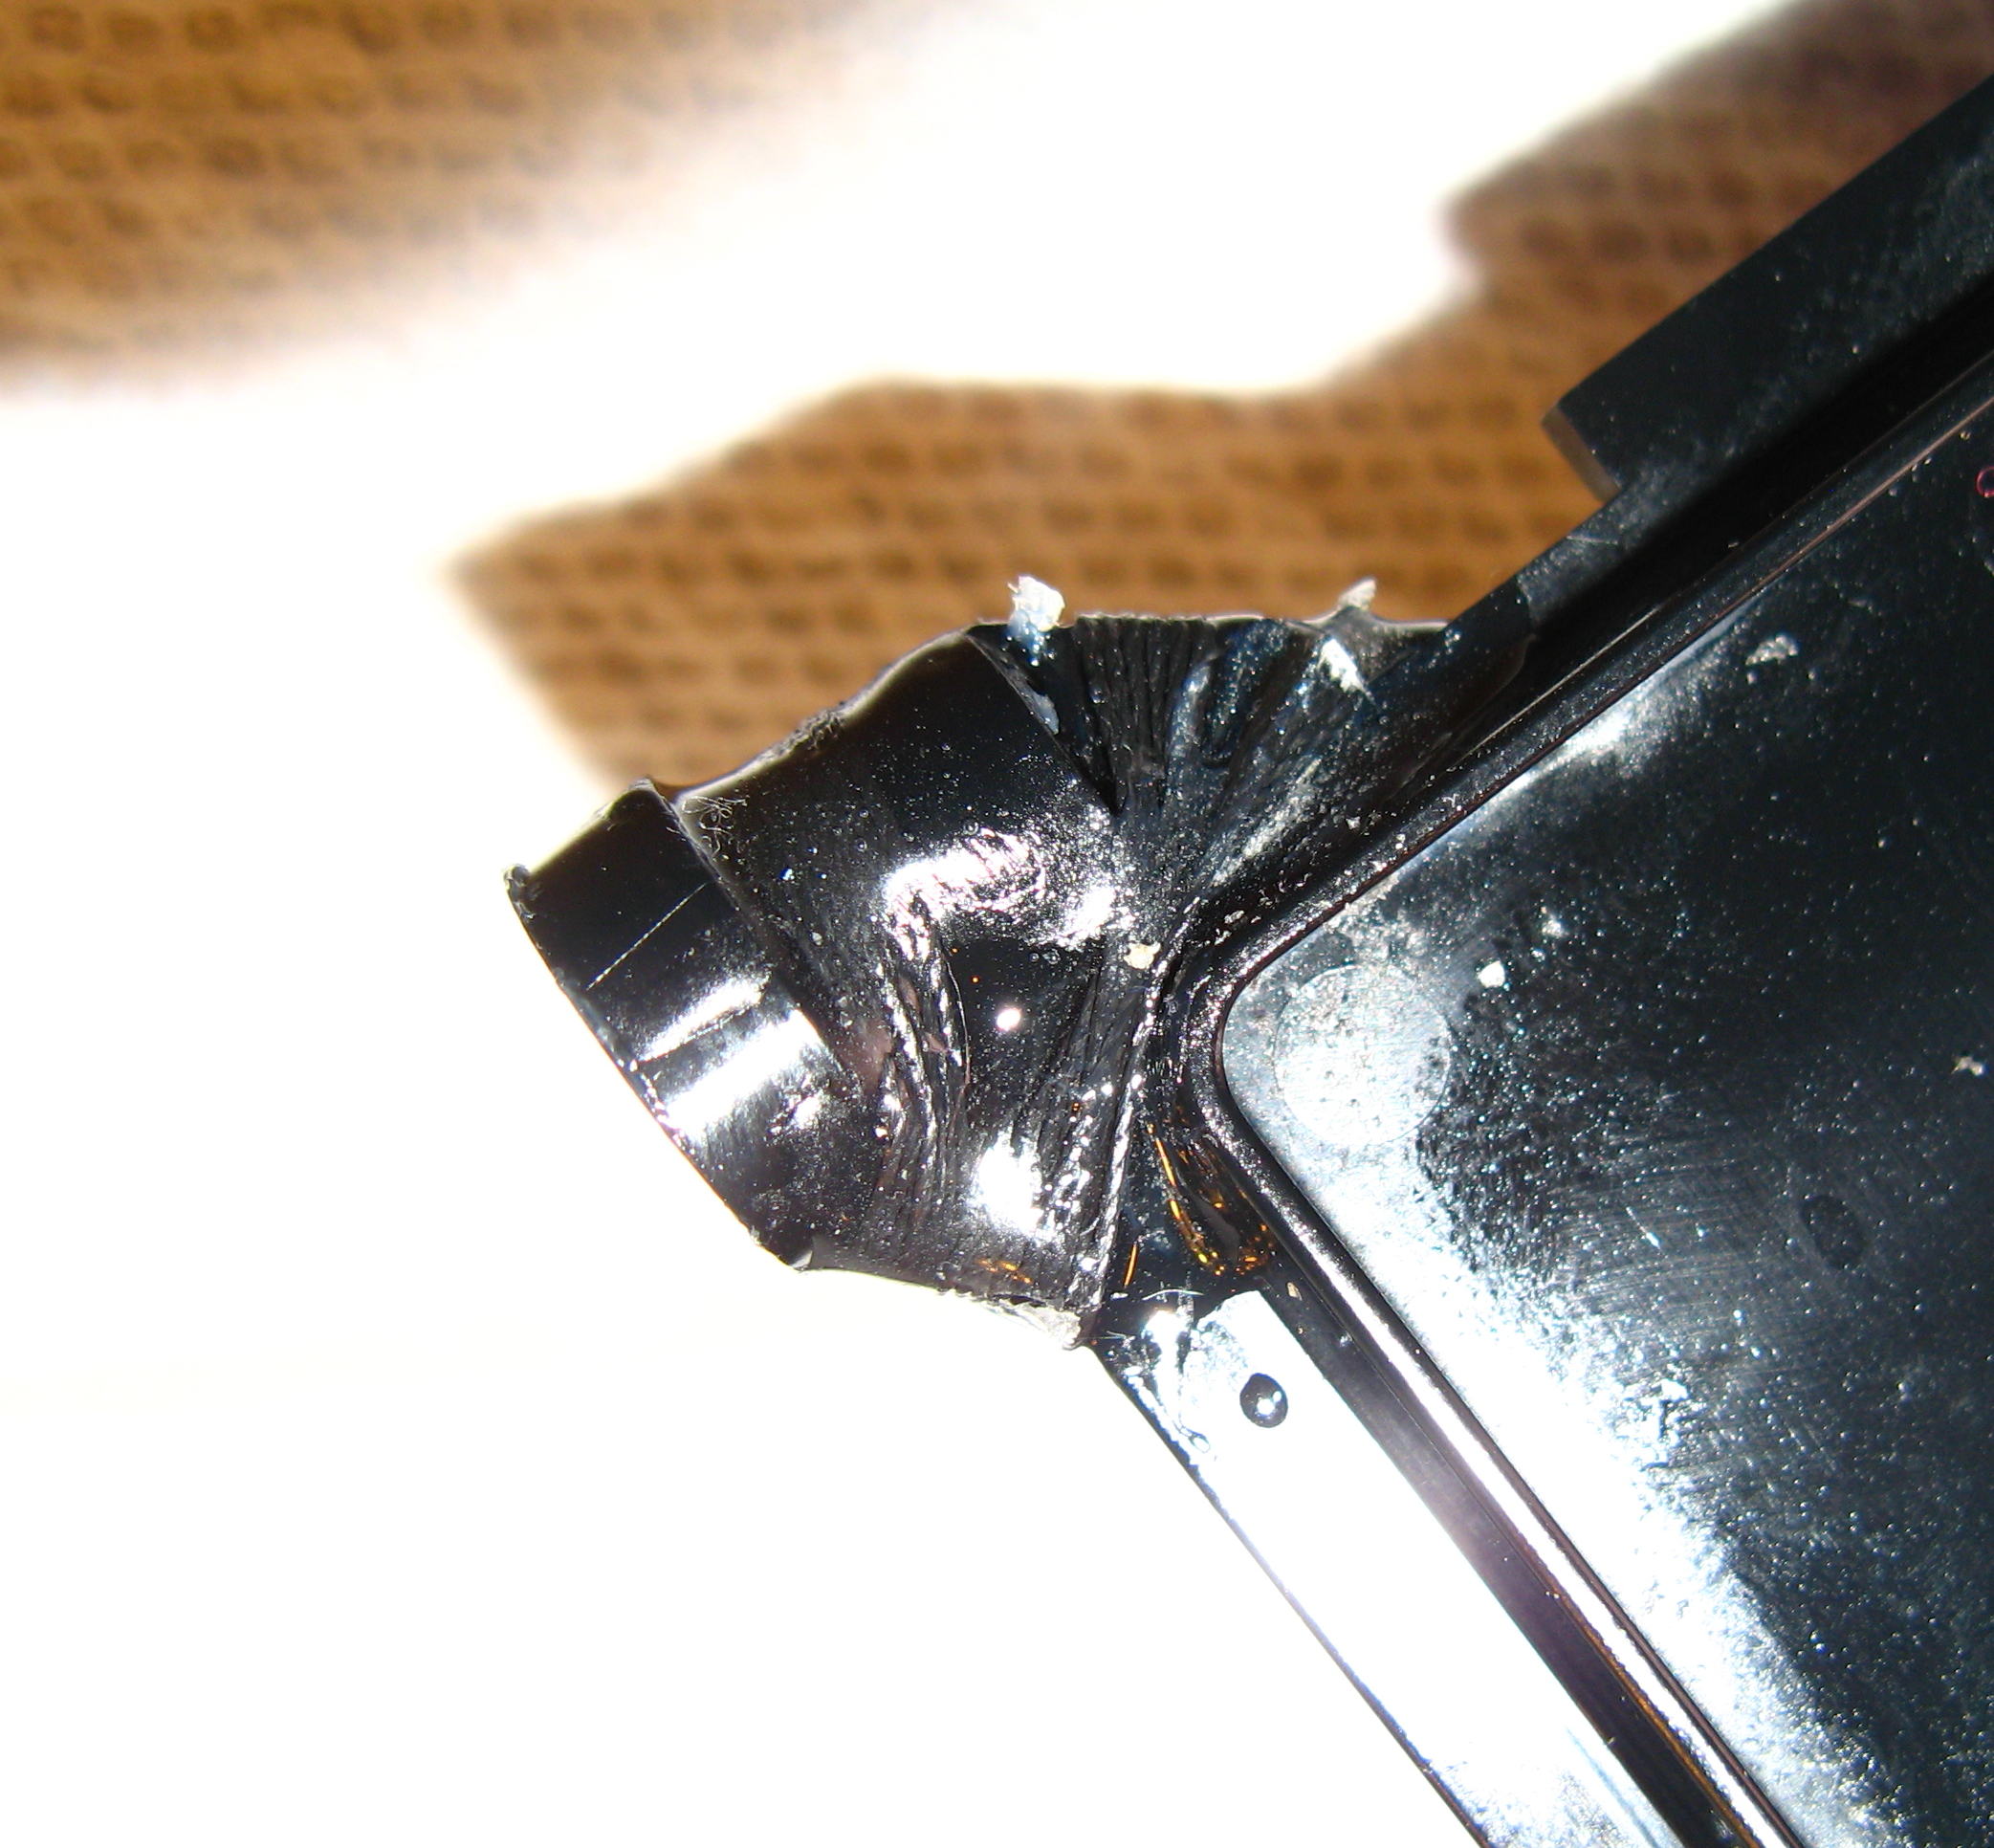 damper close-up view of fix